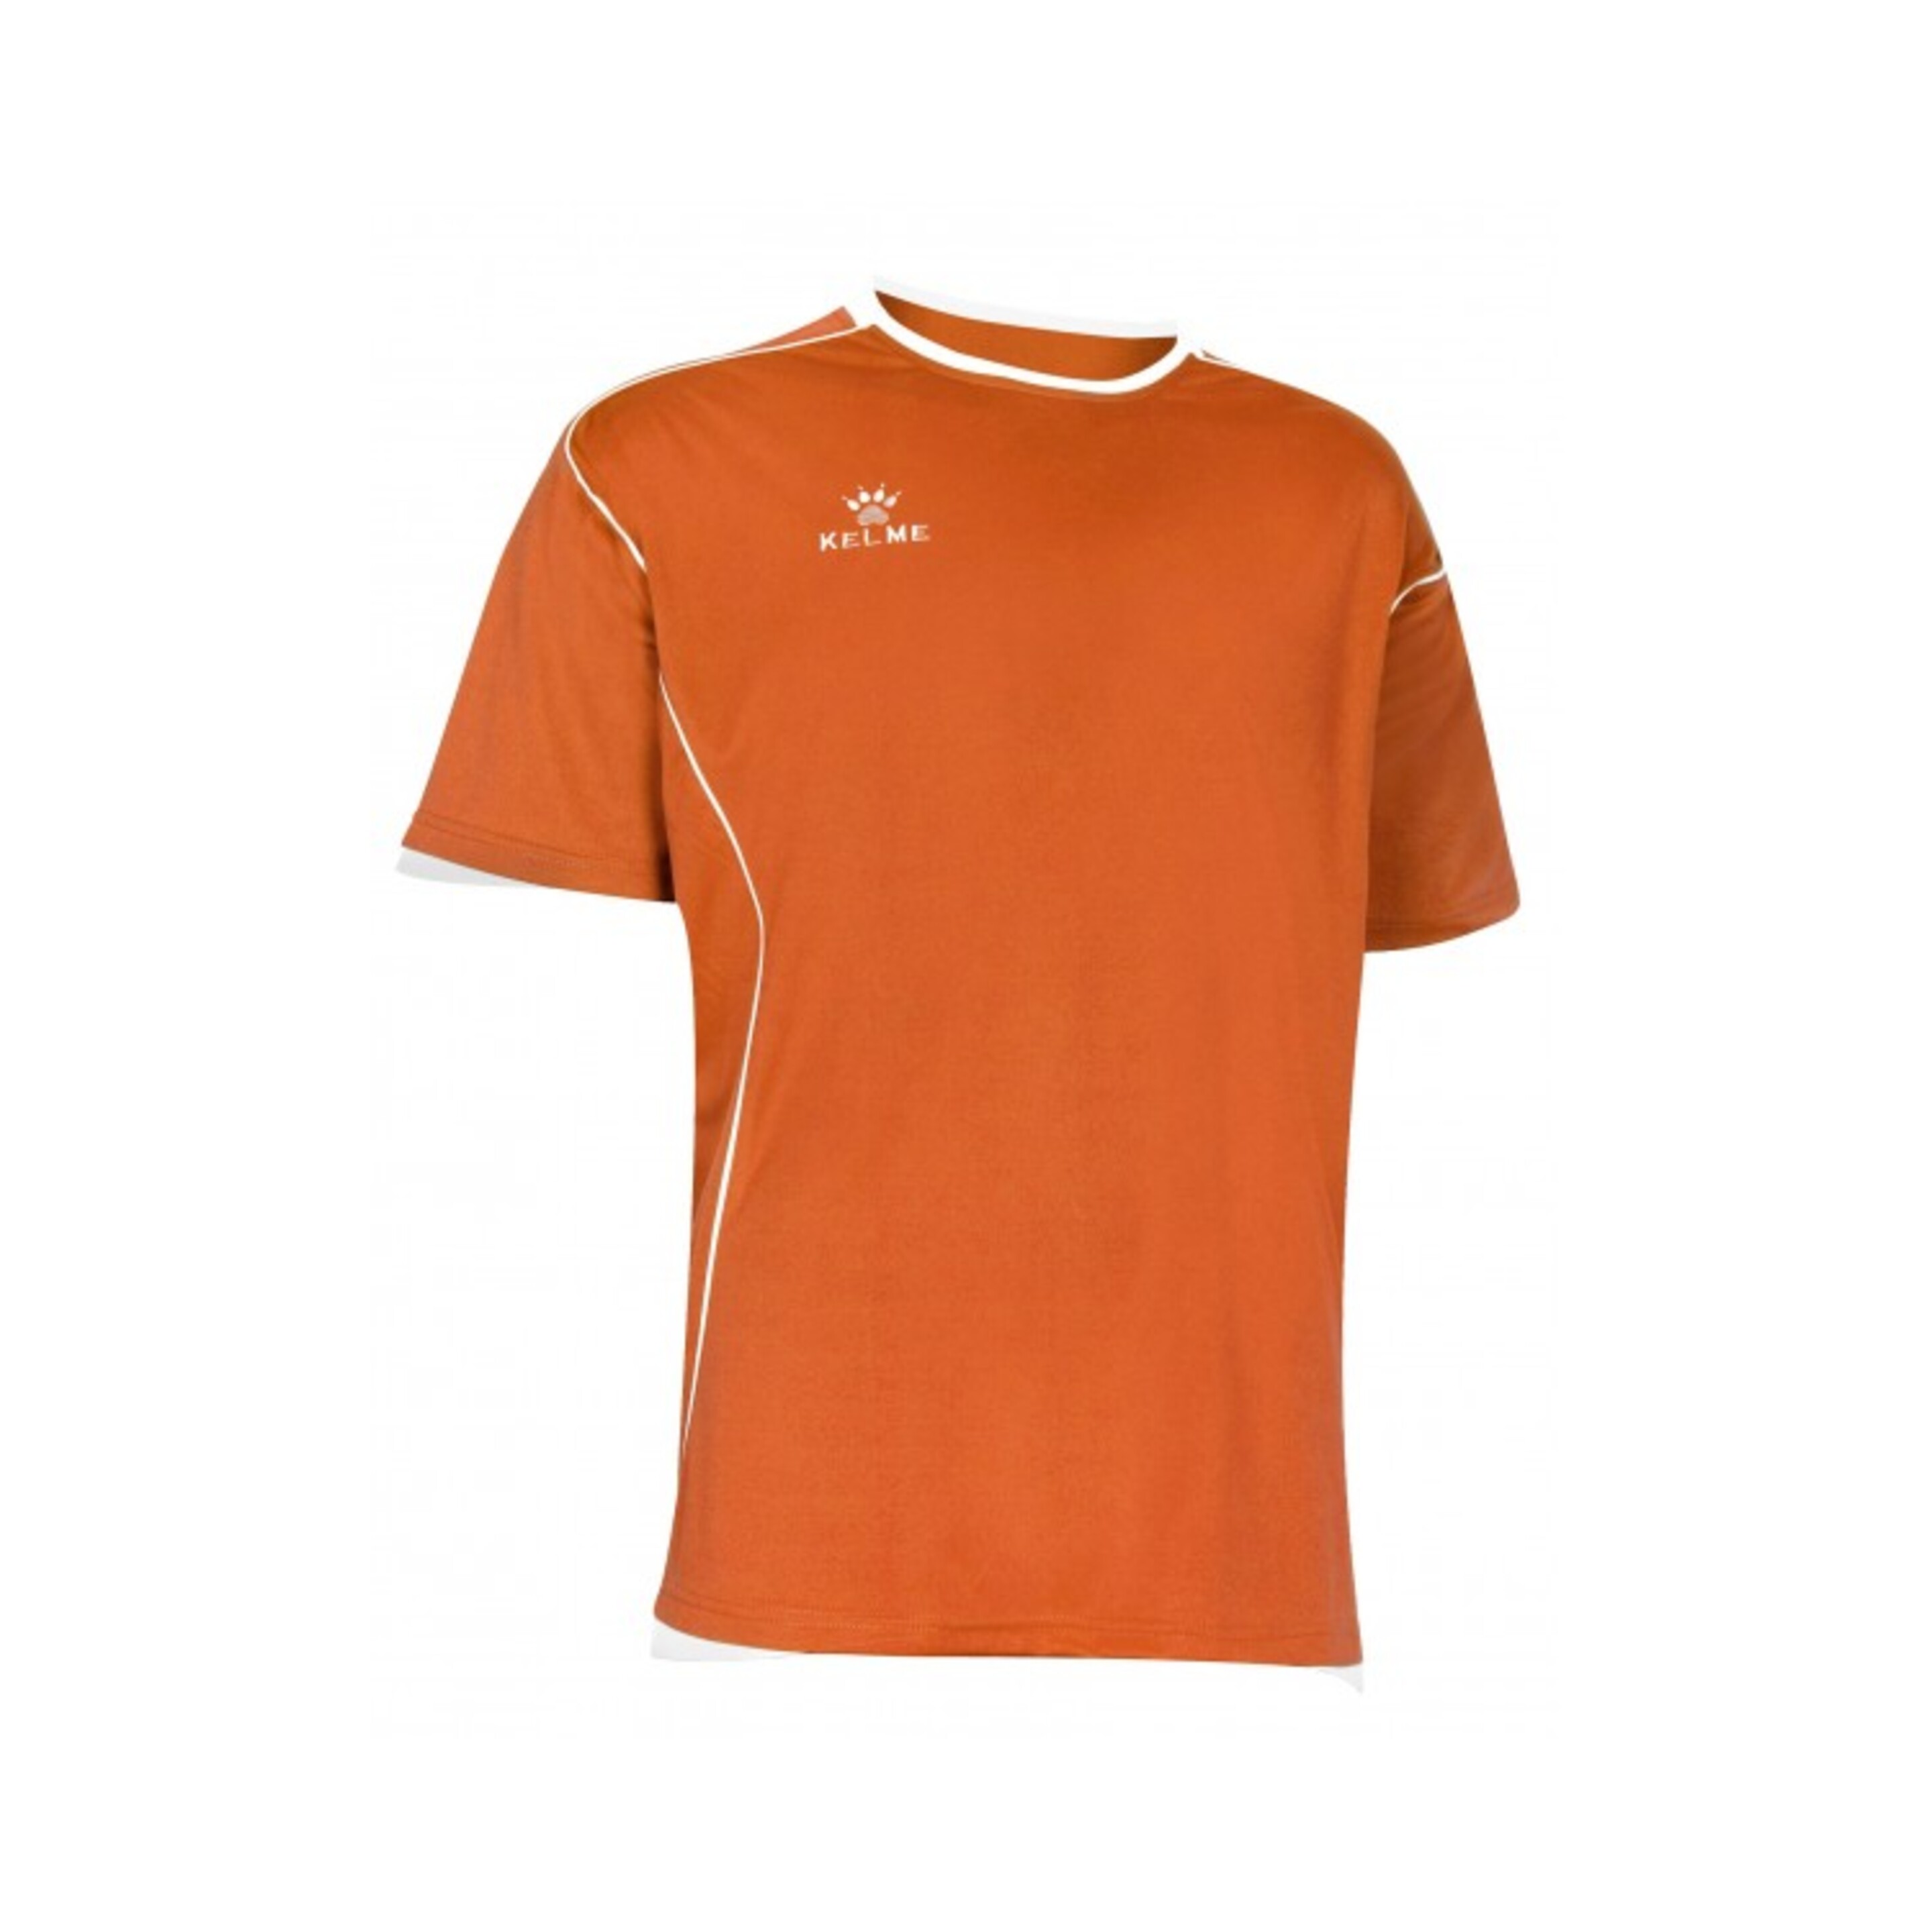 Camiseta Manga Corta Kelme Camiseta Mundial Naranja - Naranja  MKP